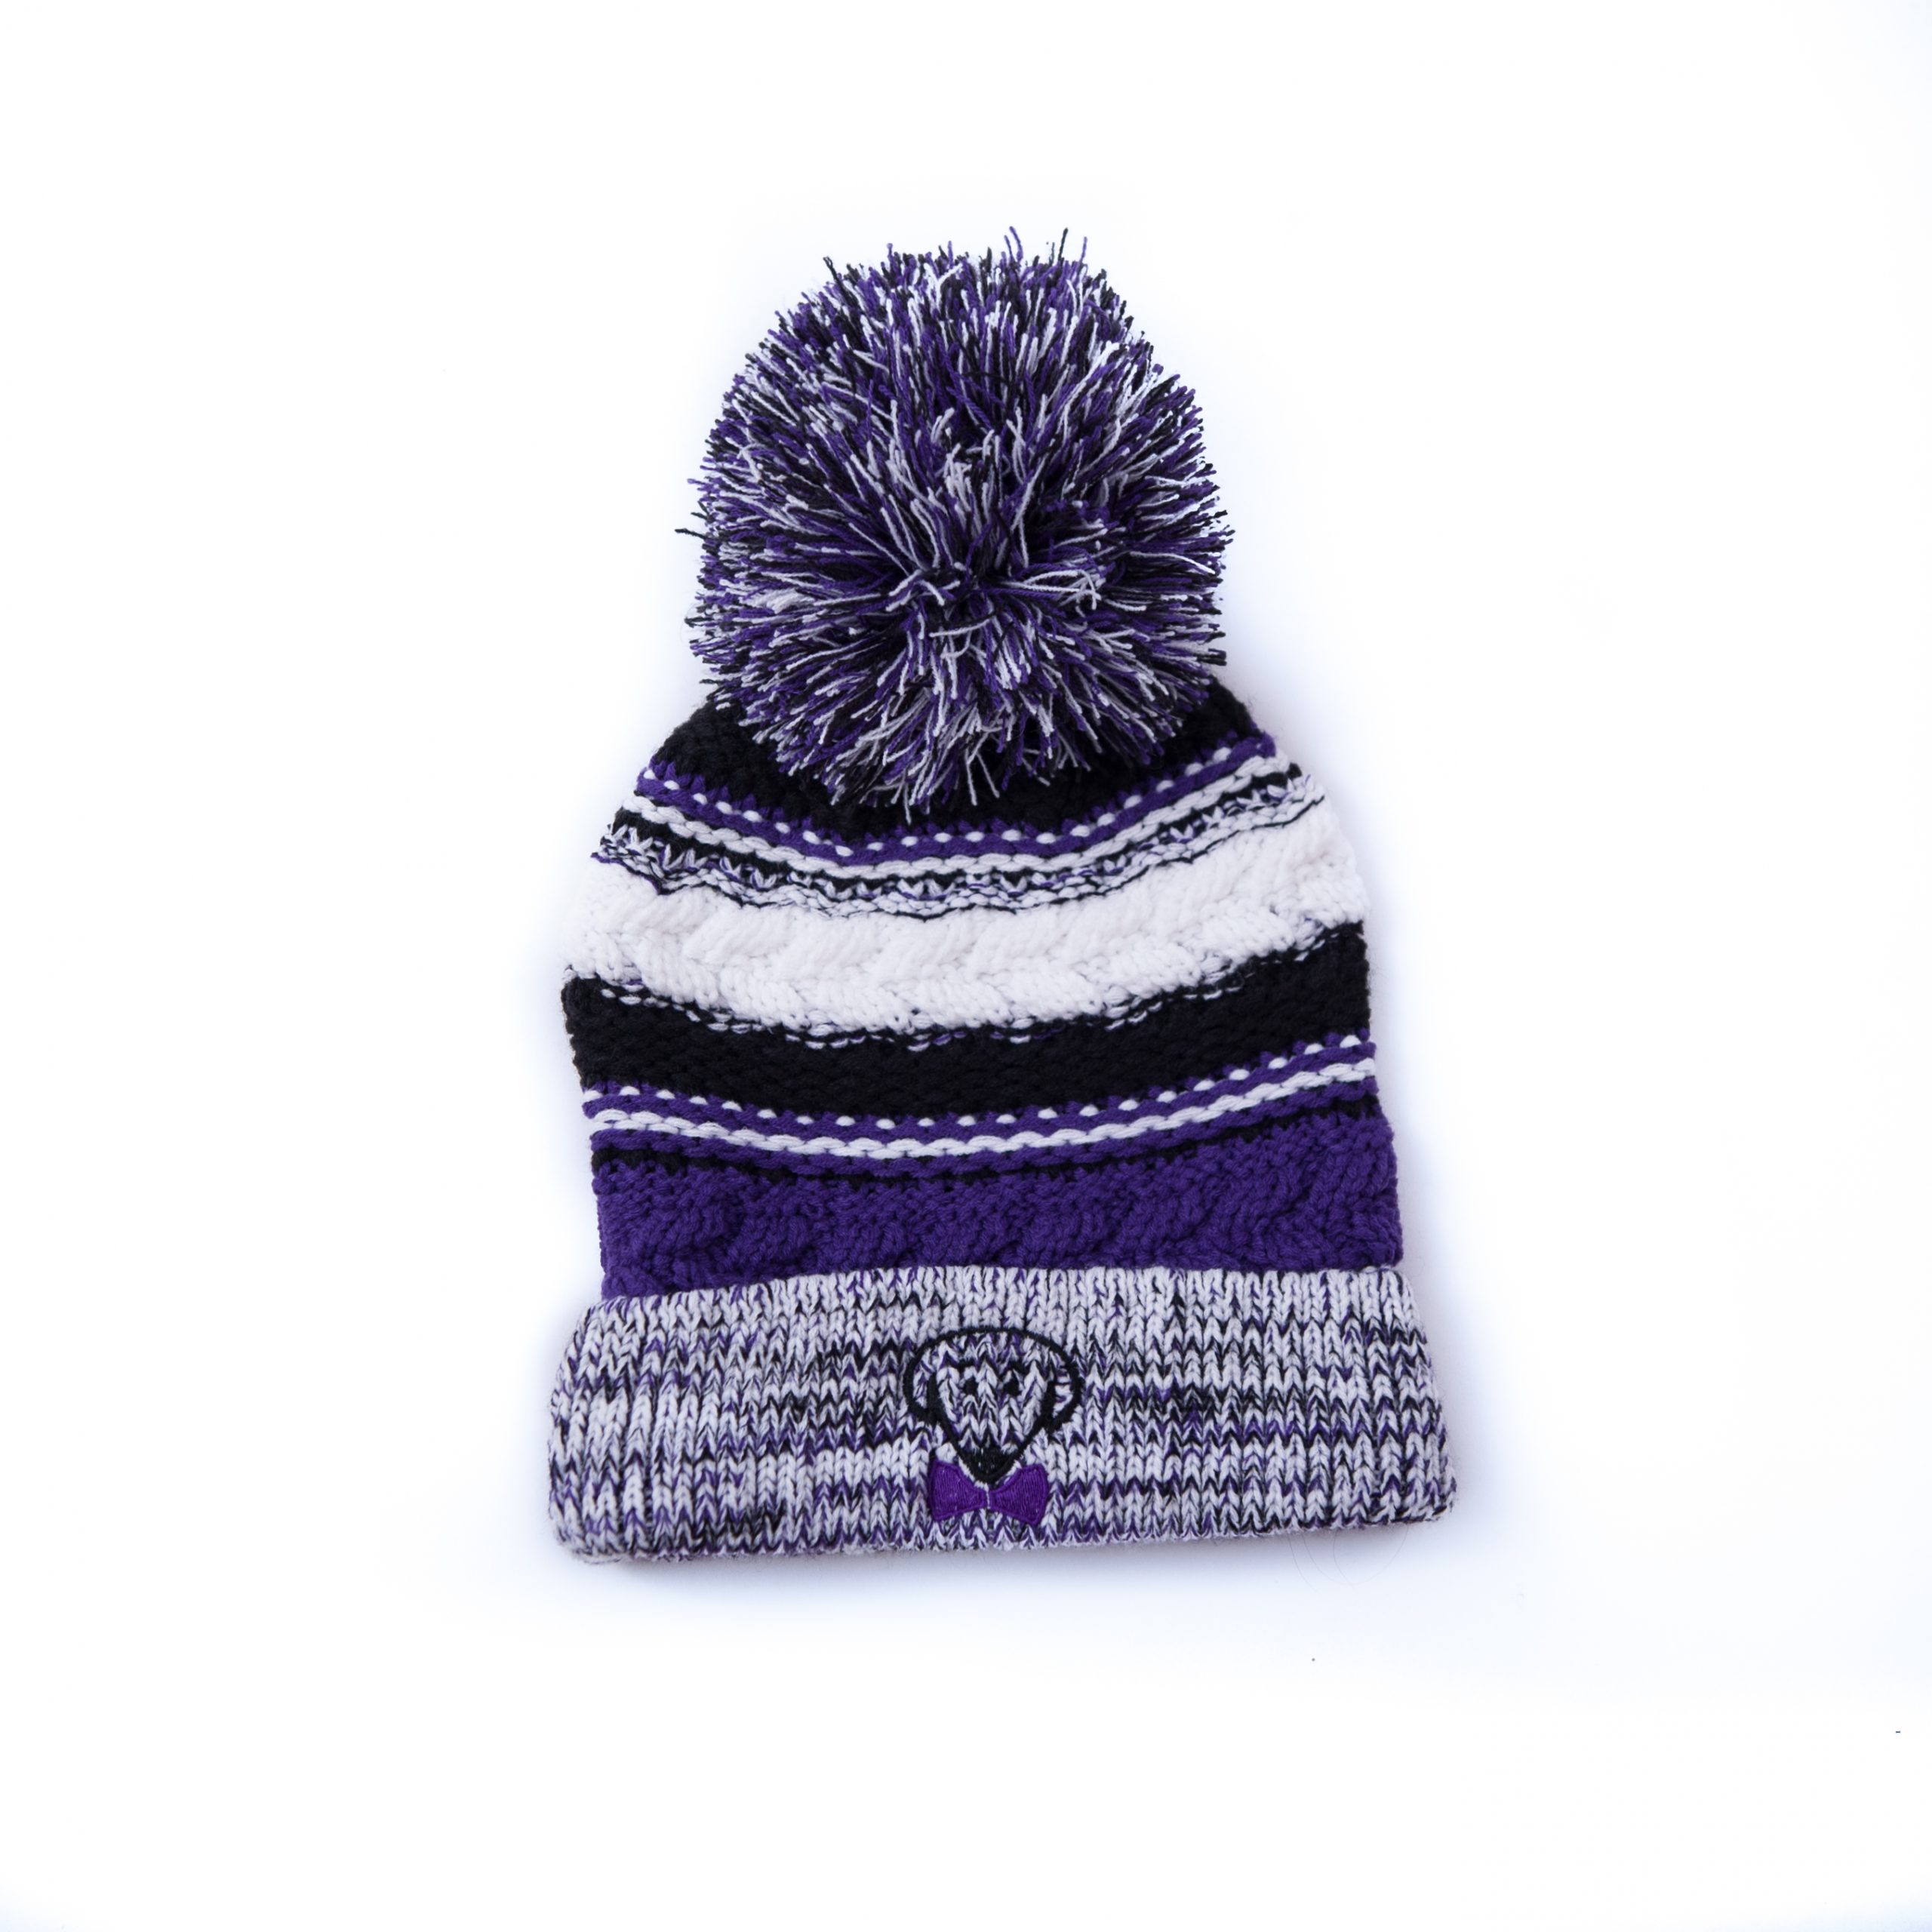 purple winter hat